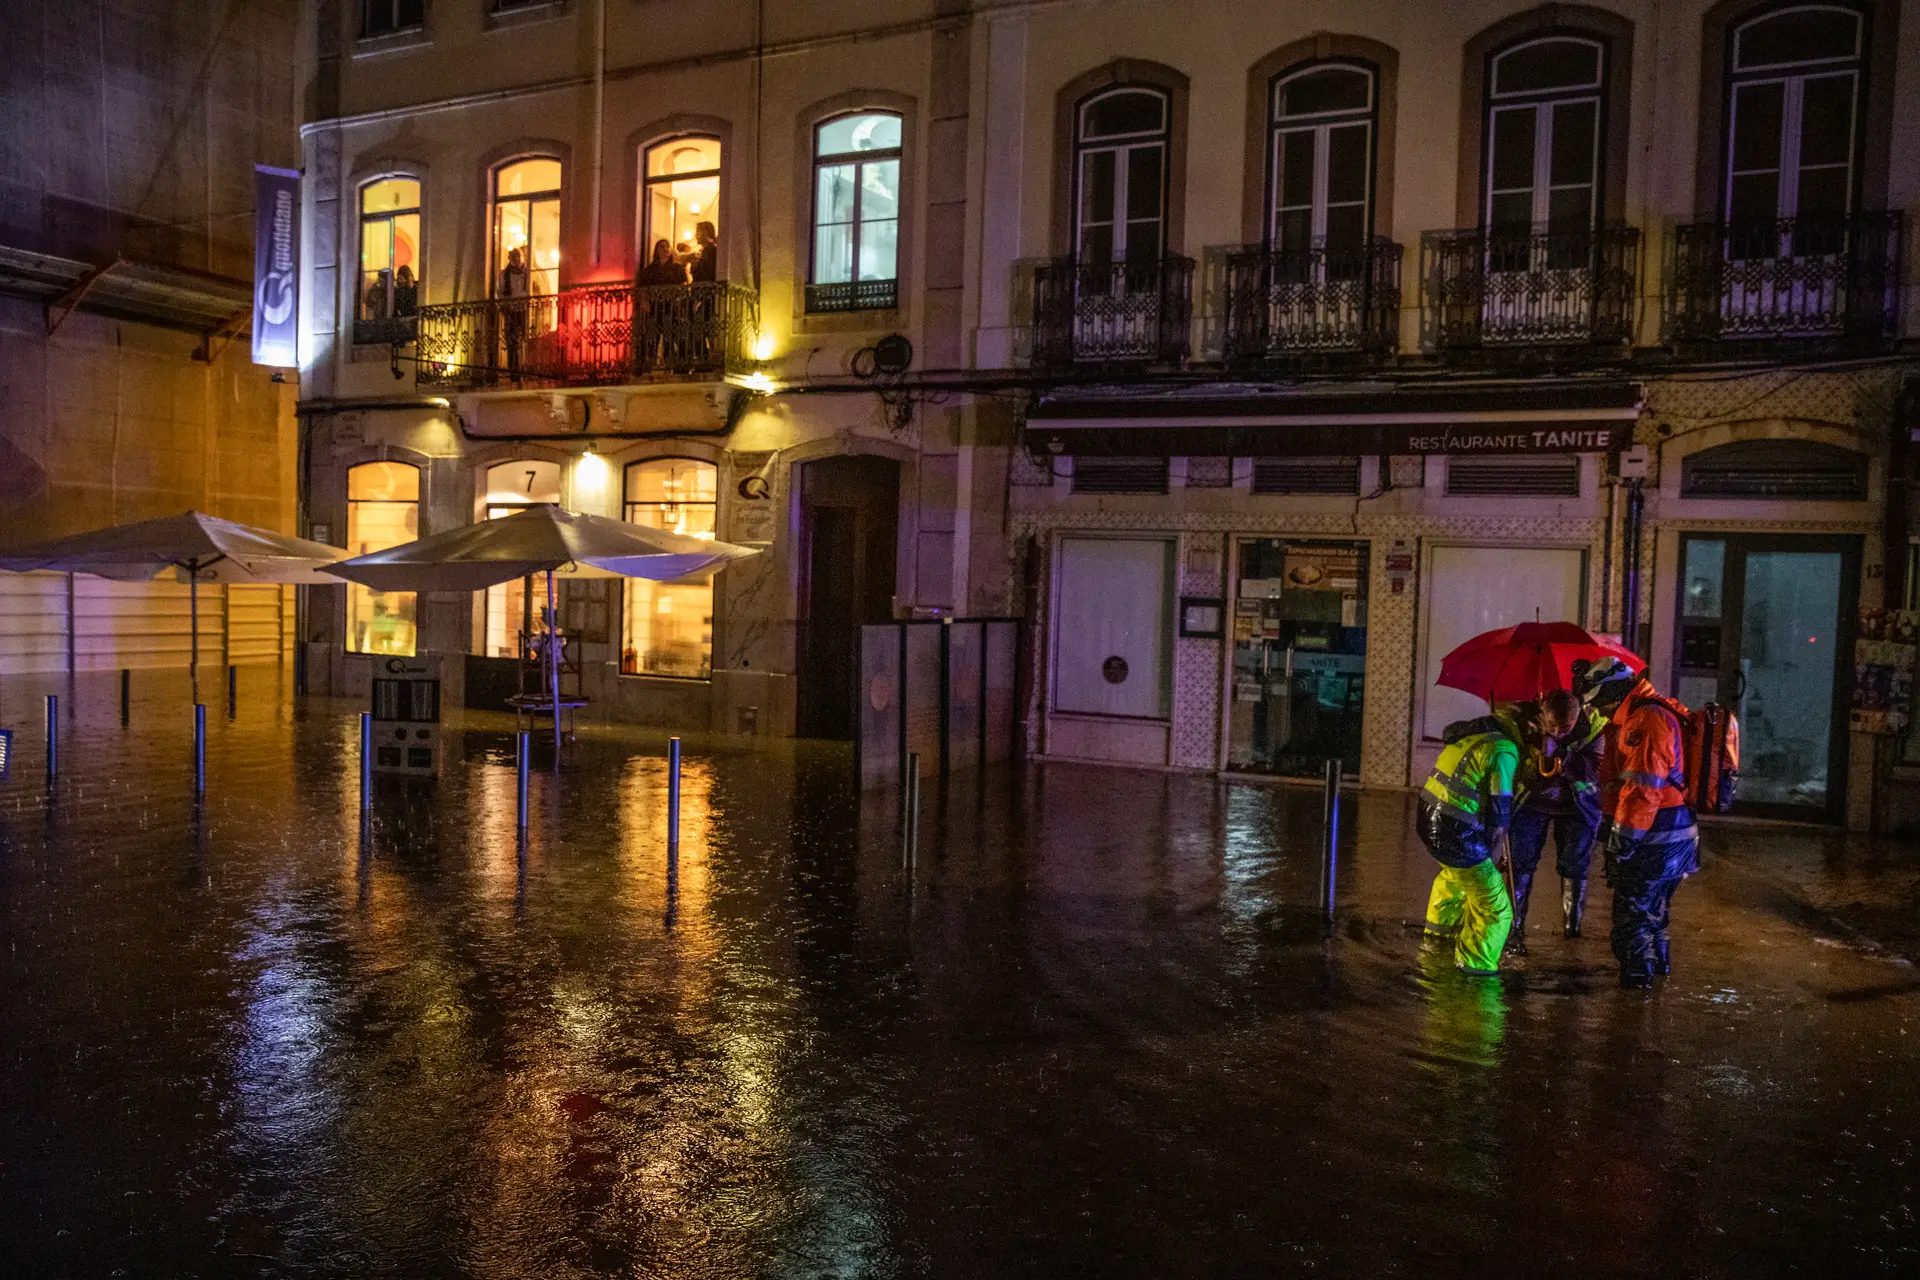 Túneis podem ser encerrados e trânsito desviado: Câmara de Lisboa pede “precauções redobradas” após aviso laranja de chuva forte